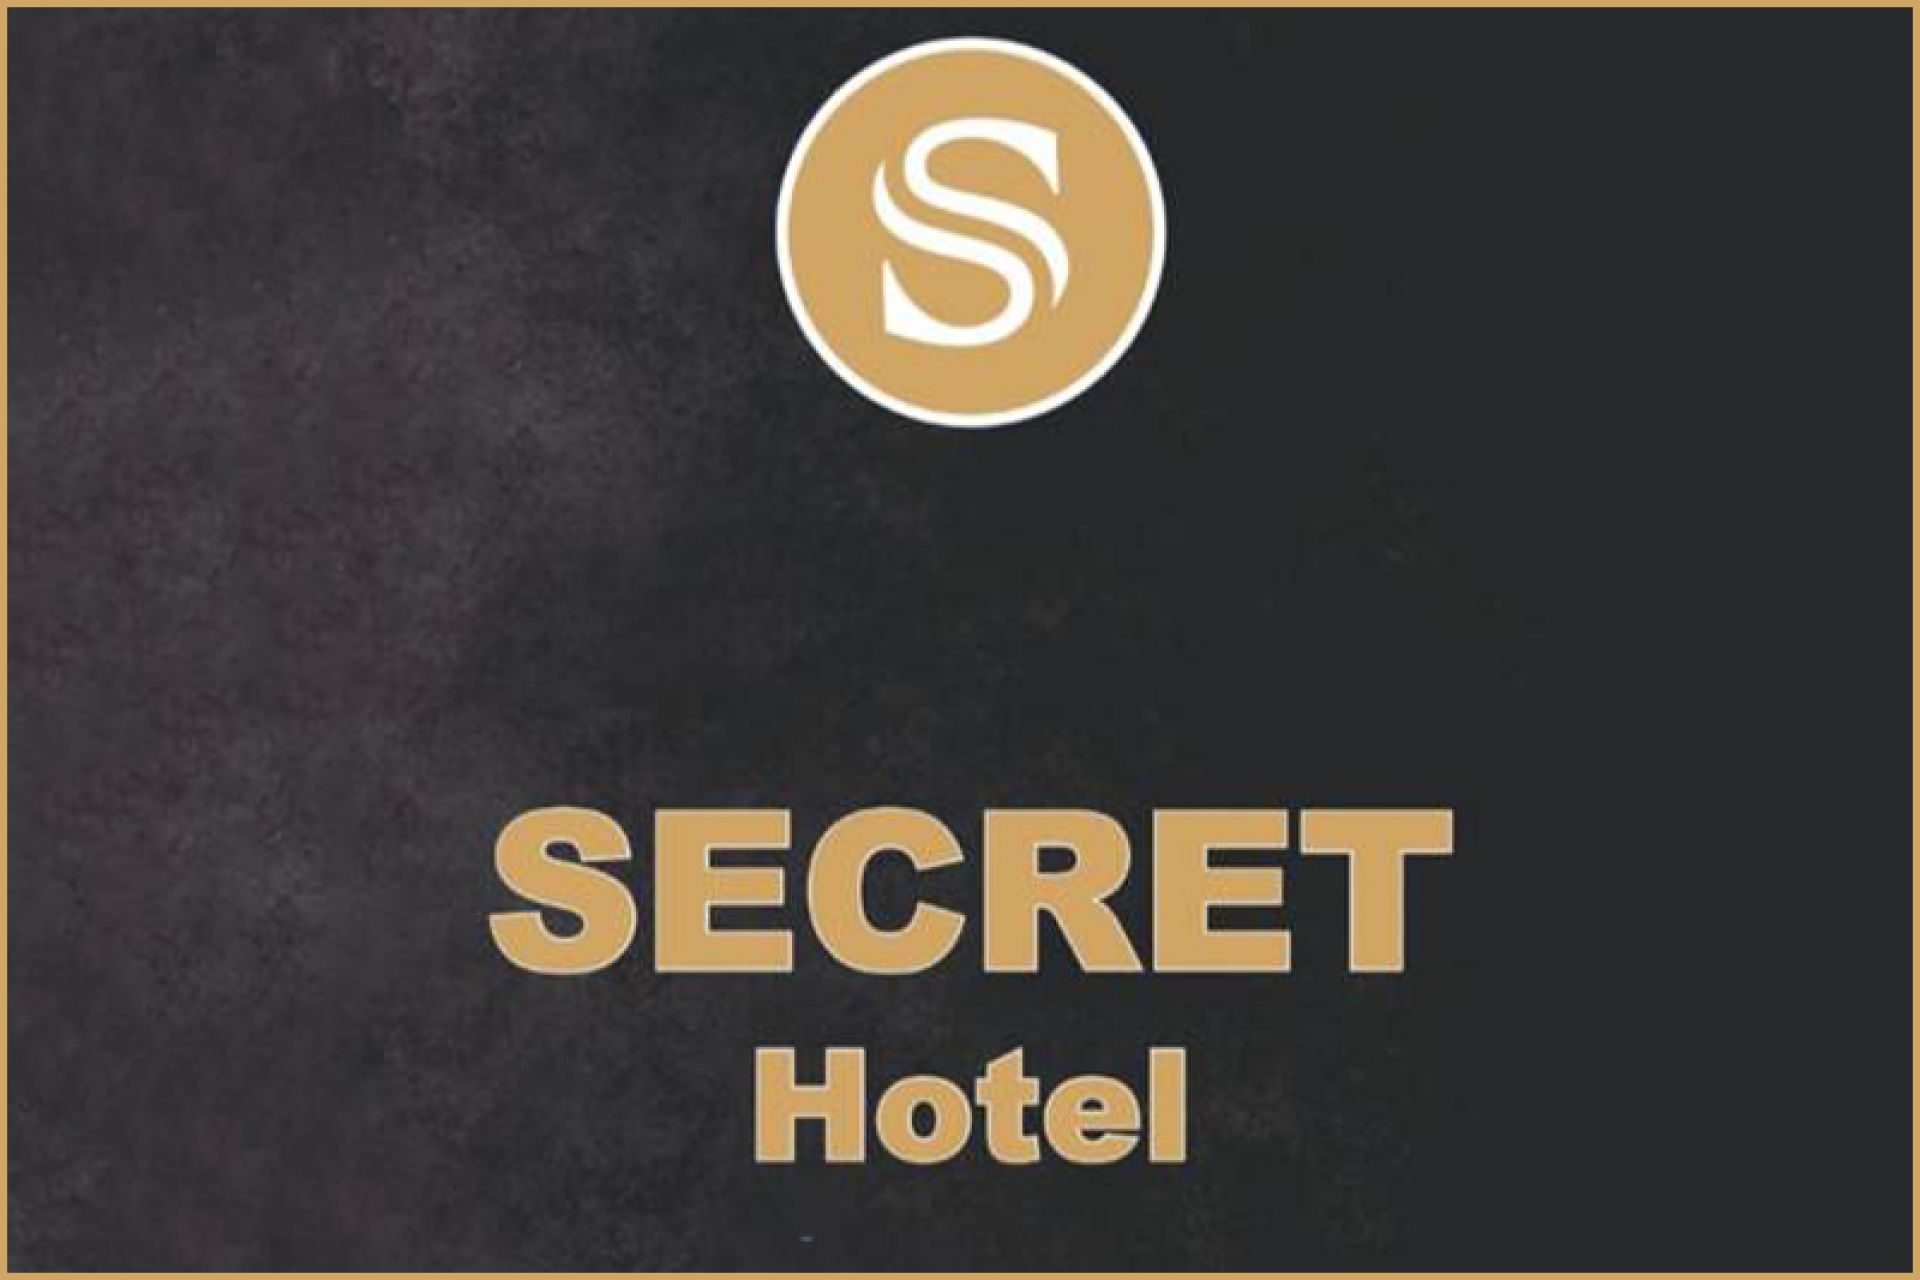 Secret Hotel - Sağlamlıq təmizlikdən başlayır - EcoMedi MMC dezinfeksiya, dezinseksiya, deratizasiya, fumiqasiya işlərinin həyata keçirilməsi üzrə qabaqcıl şirkətdir.